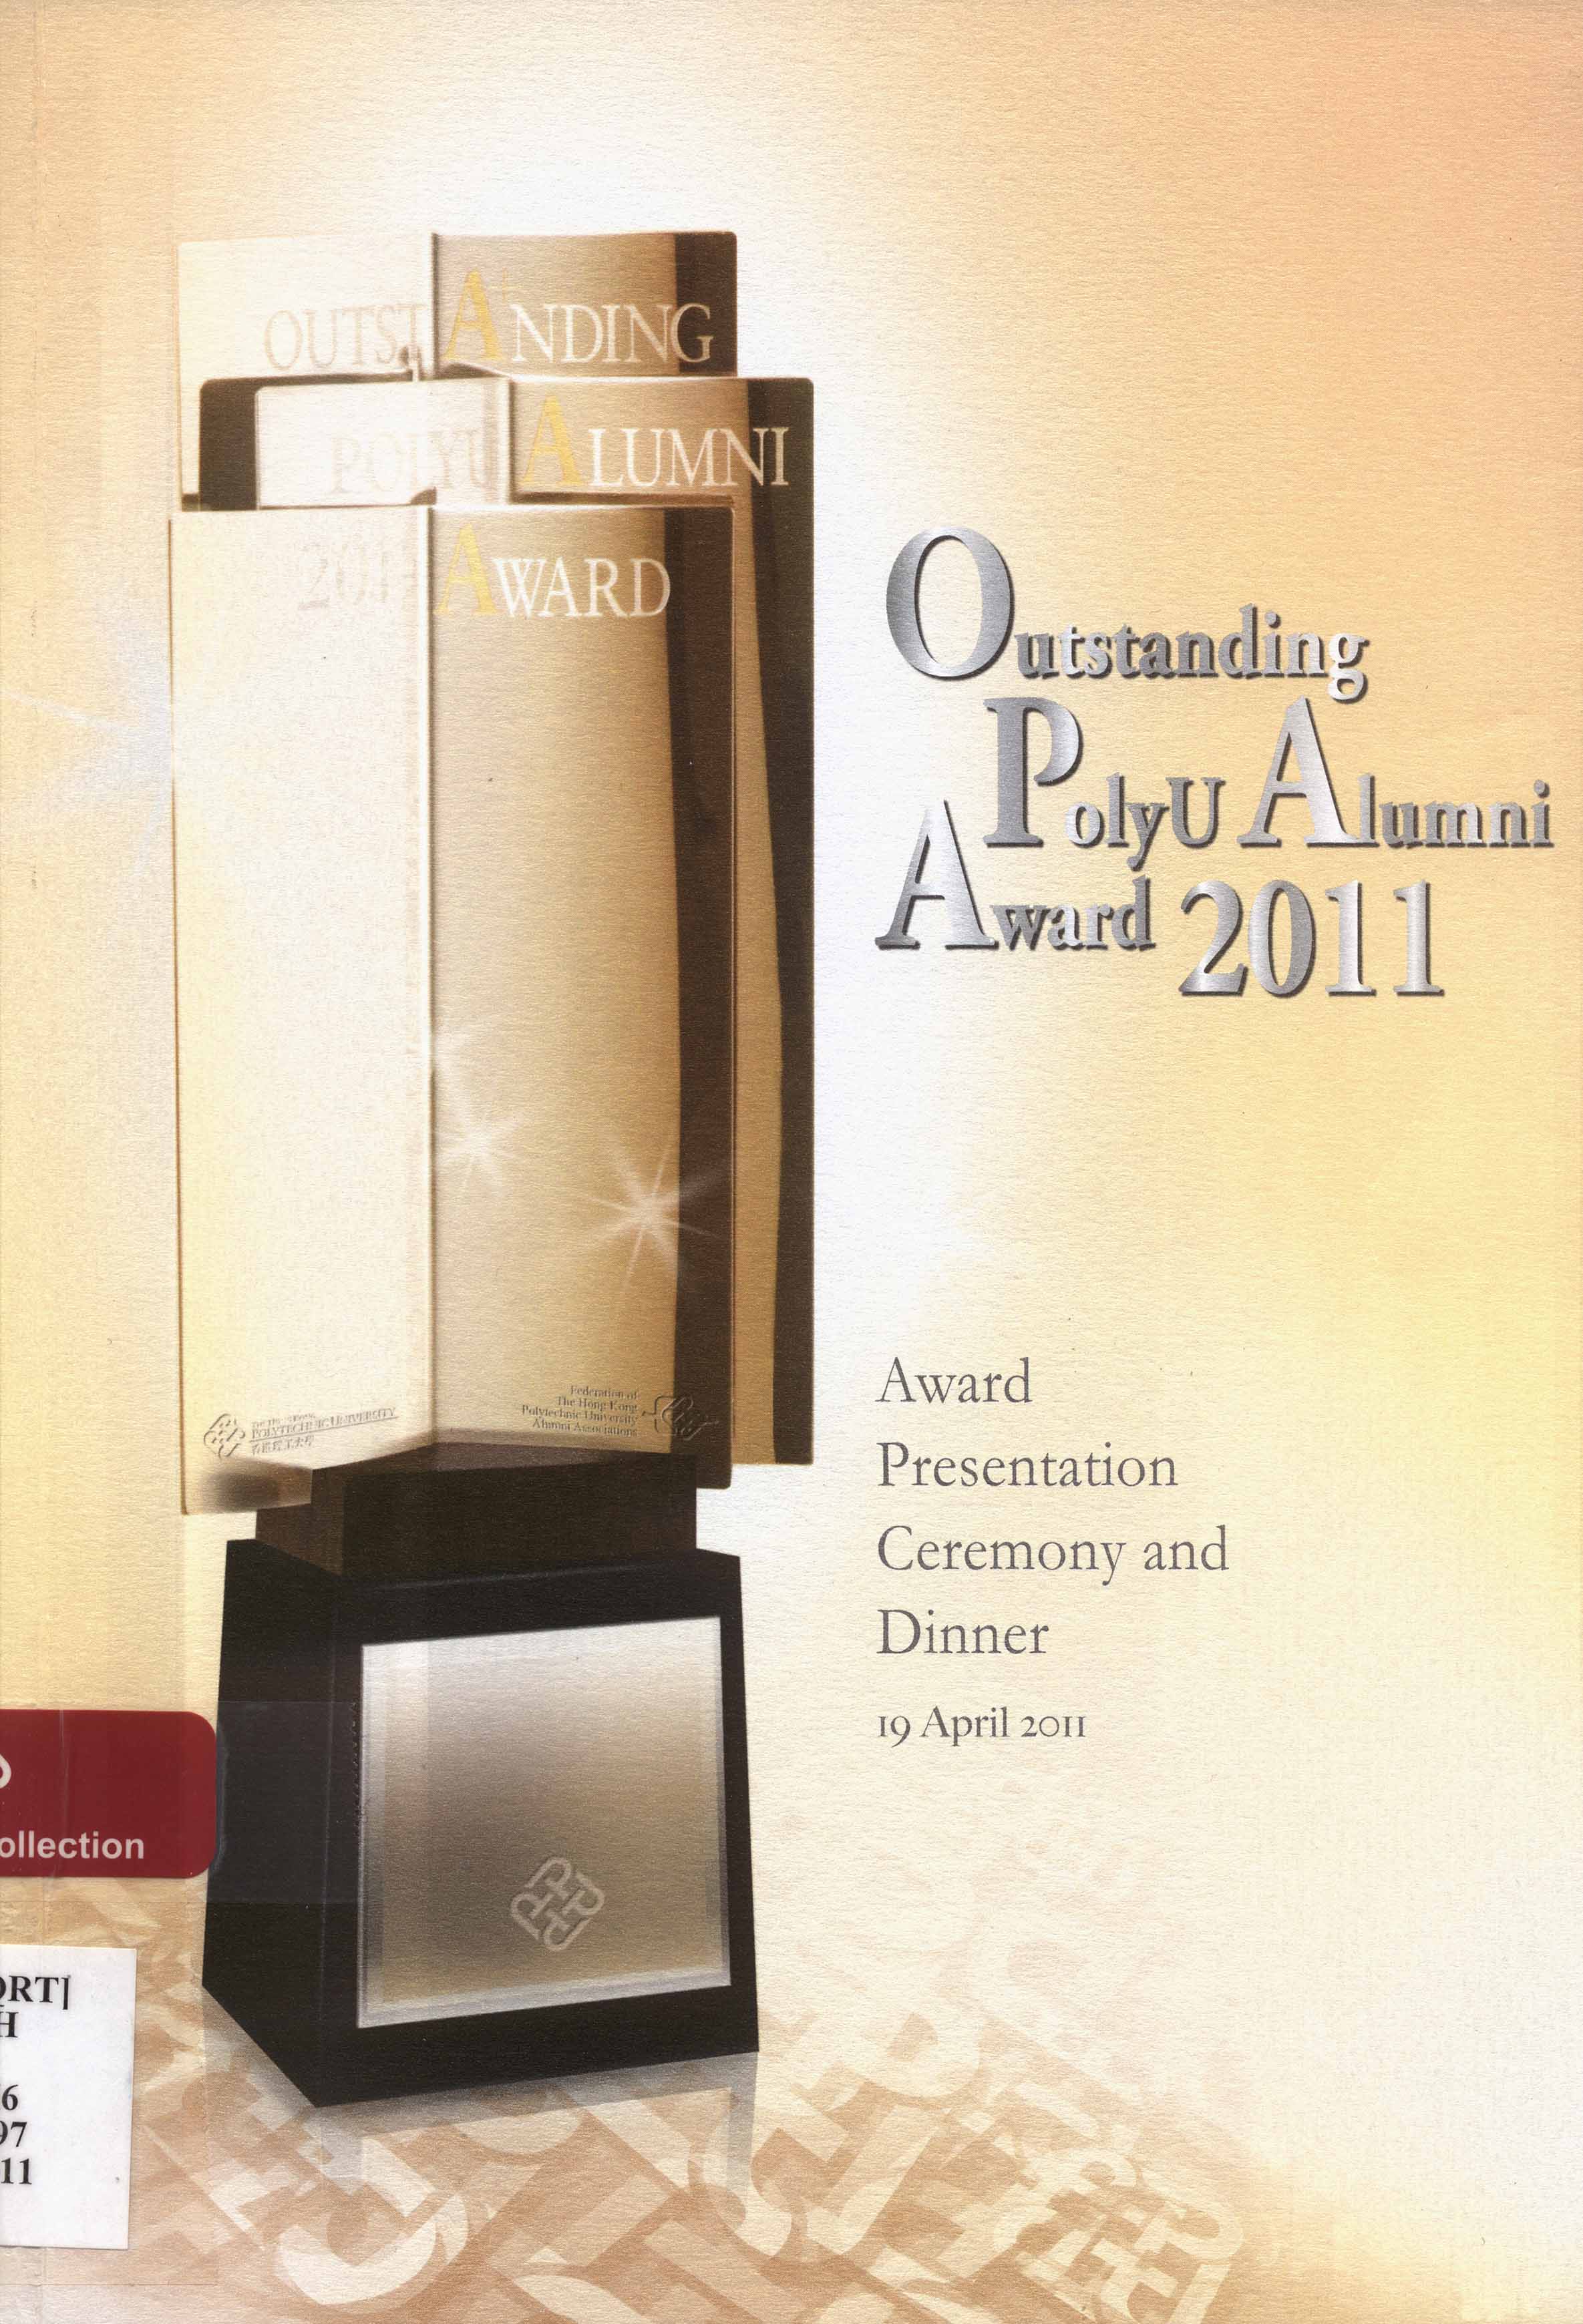 Outstanding Polyu alumni award [2011]